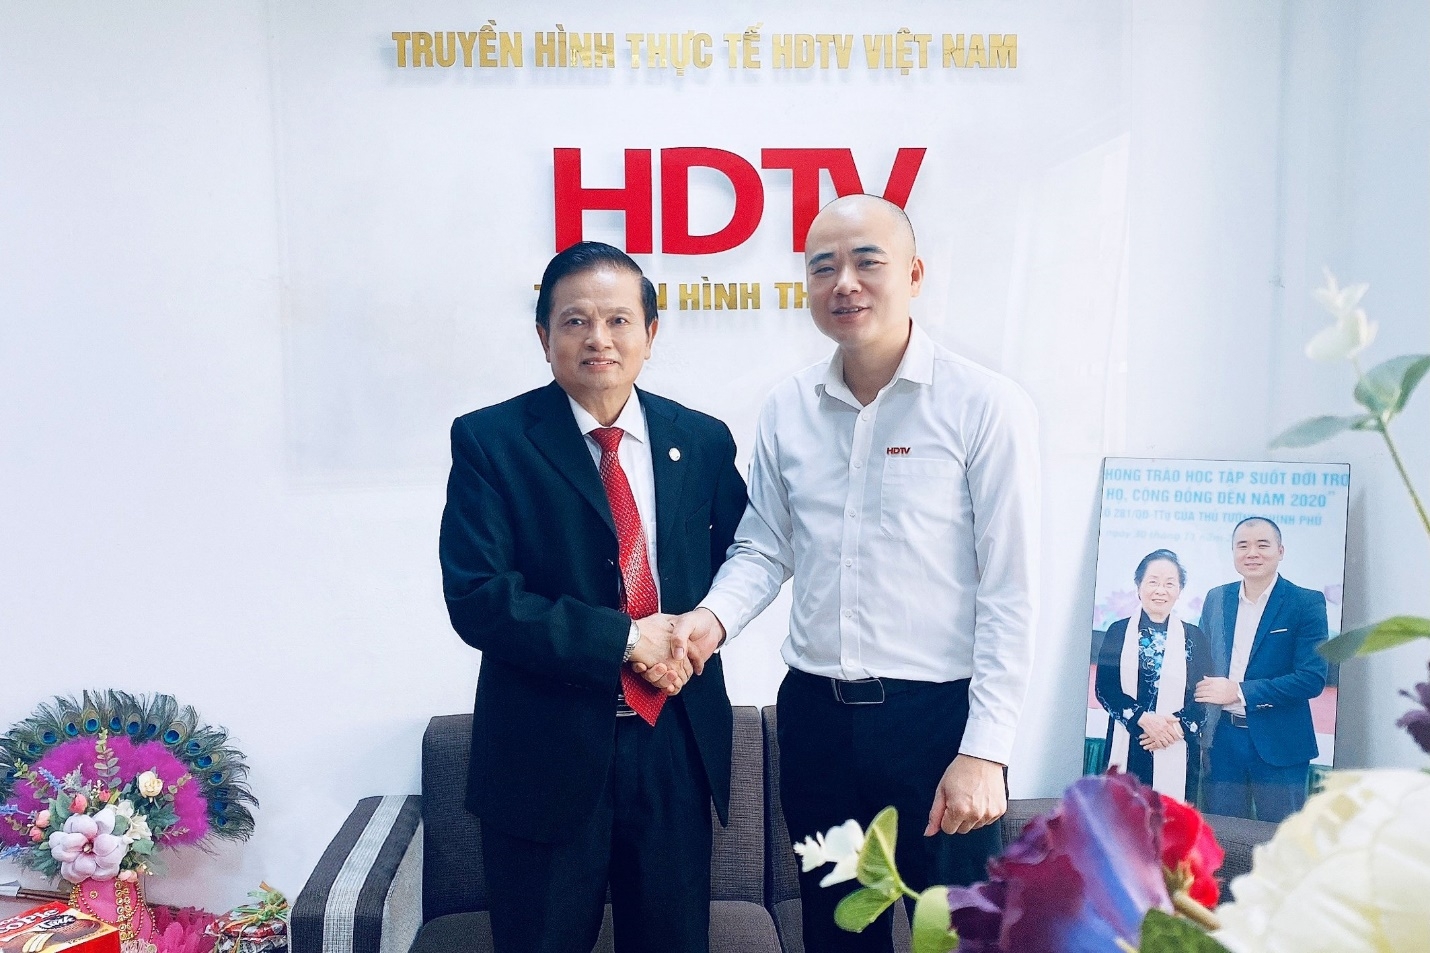 CEO, Nhà báo Nguyễn Mạnh Hà: Câu chuyện xây dựng và bảo vệ Thương hiệu